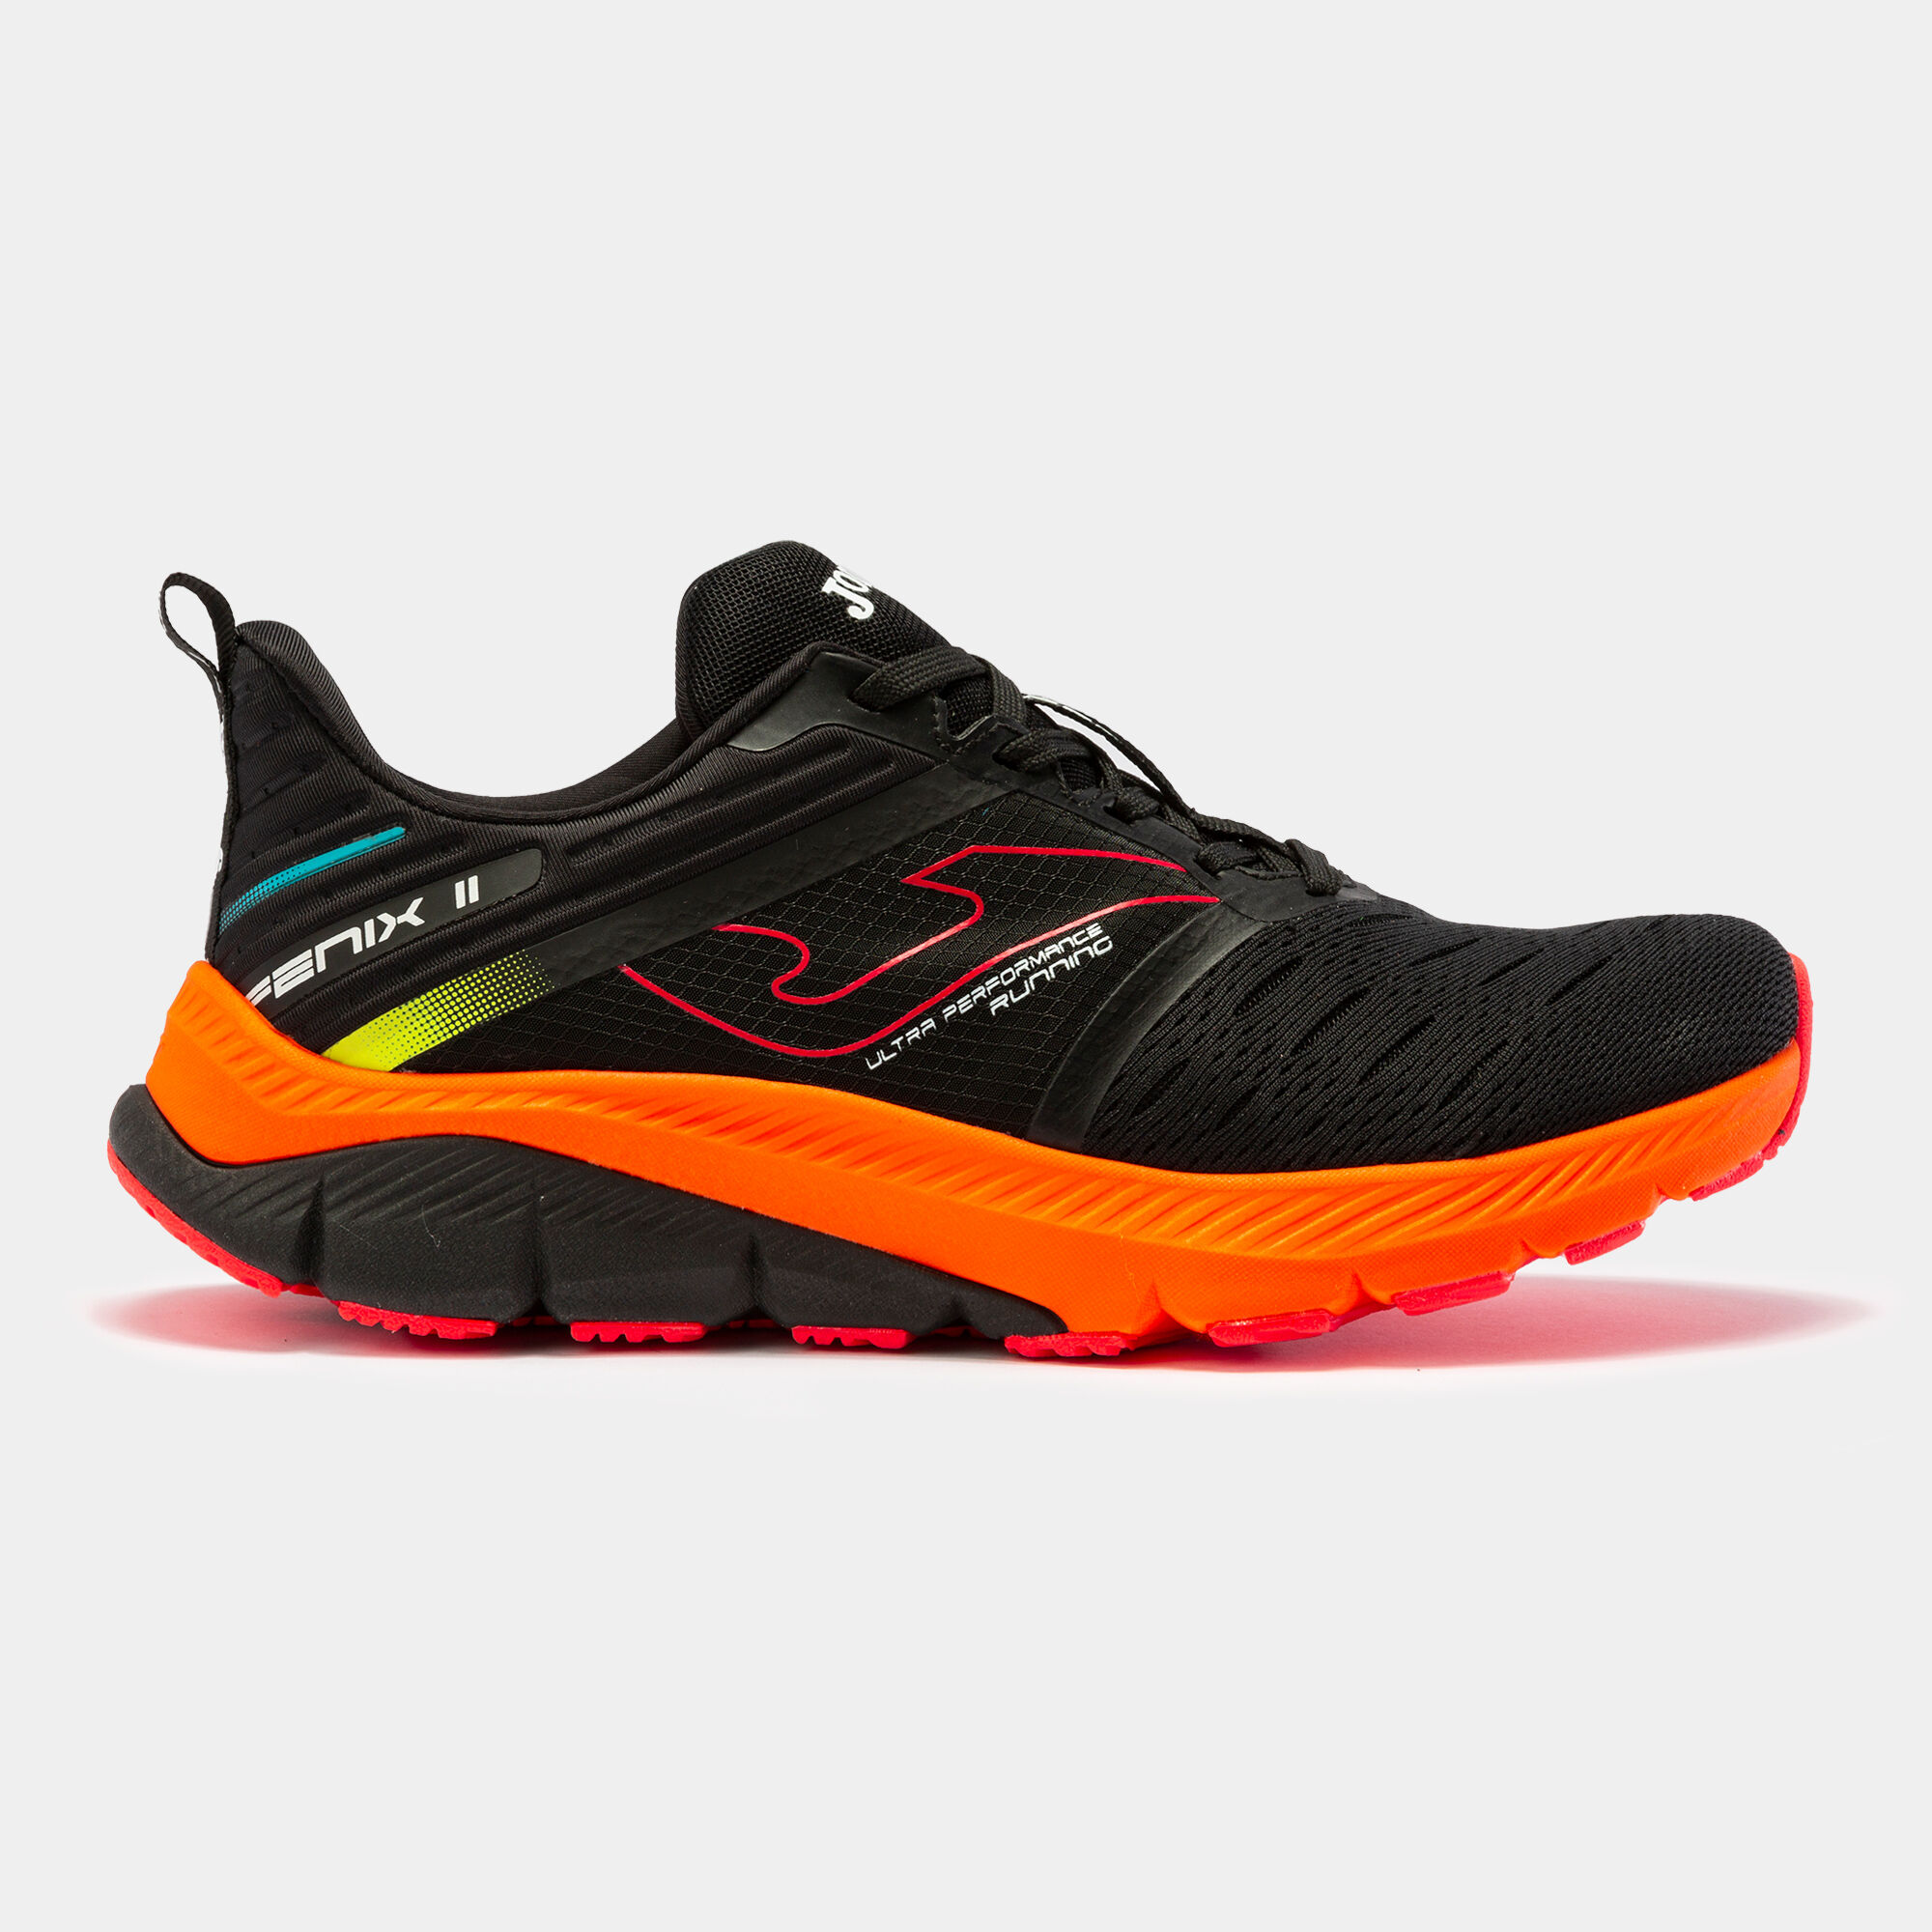 Scarpe running Fenix 22 uomo nero arancione fluorescente